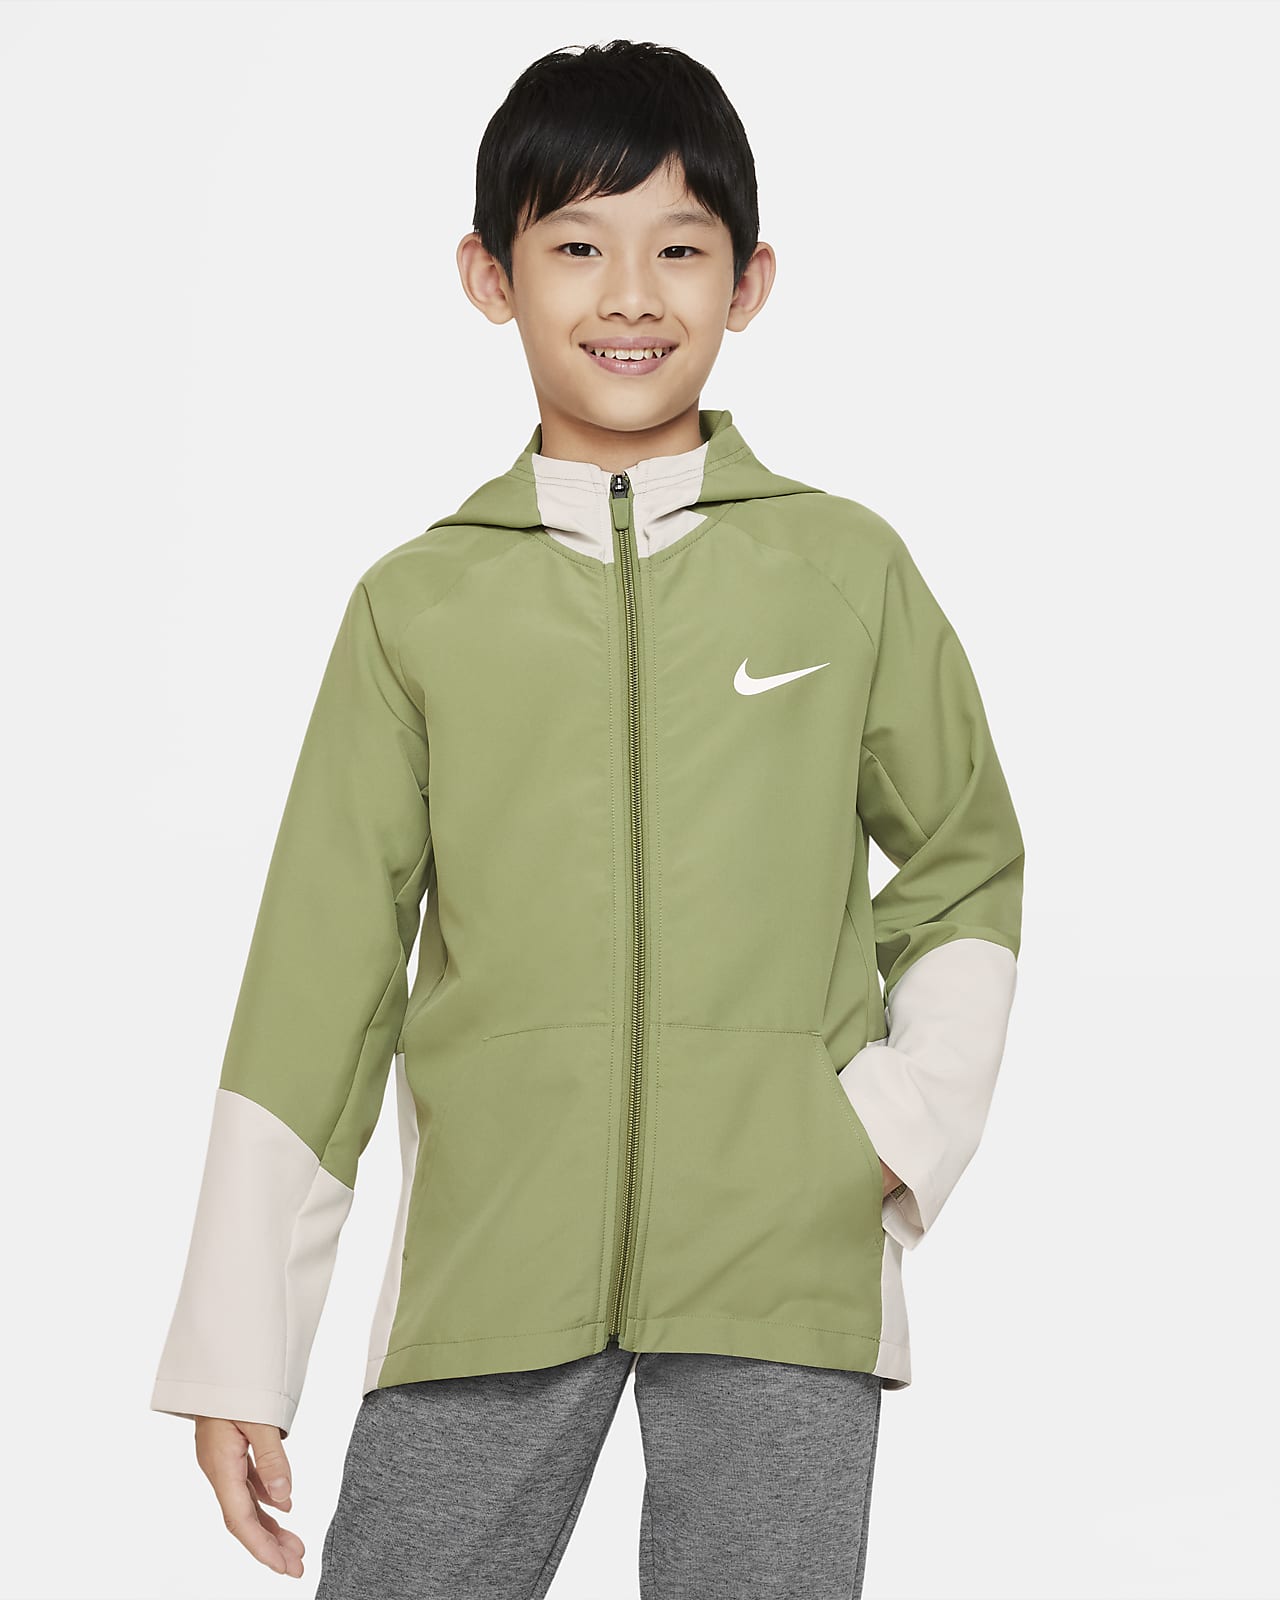 Nike Dri-FIT Kids' (Boys') Woven Training Jacket. Nike.com